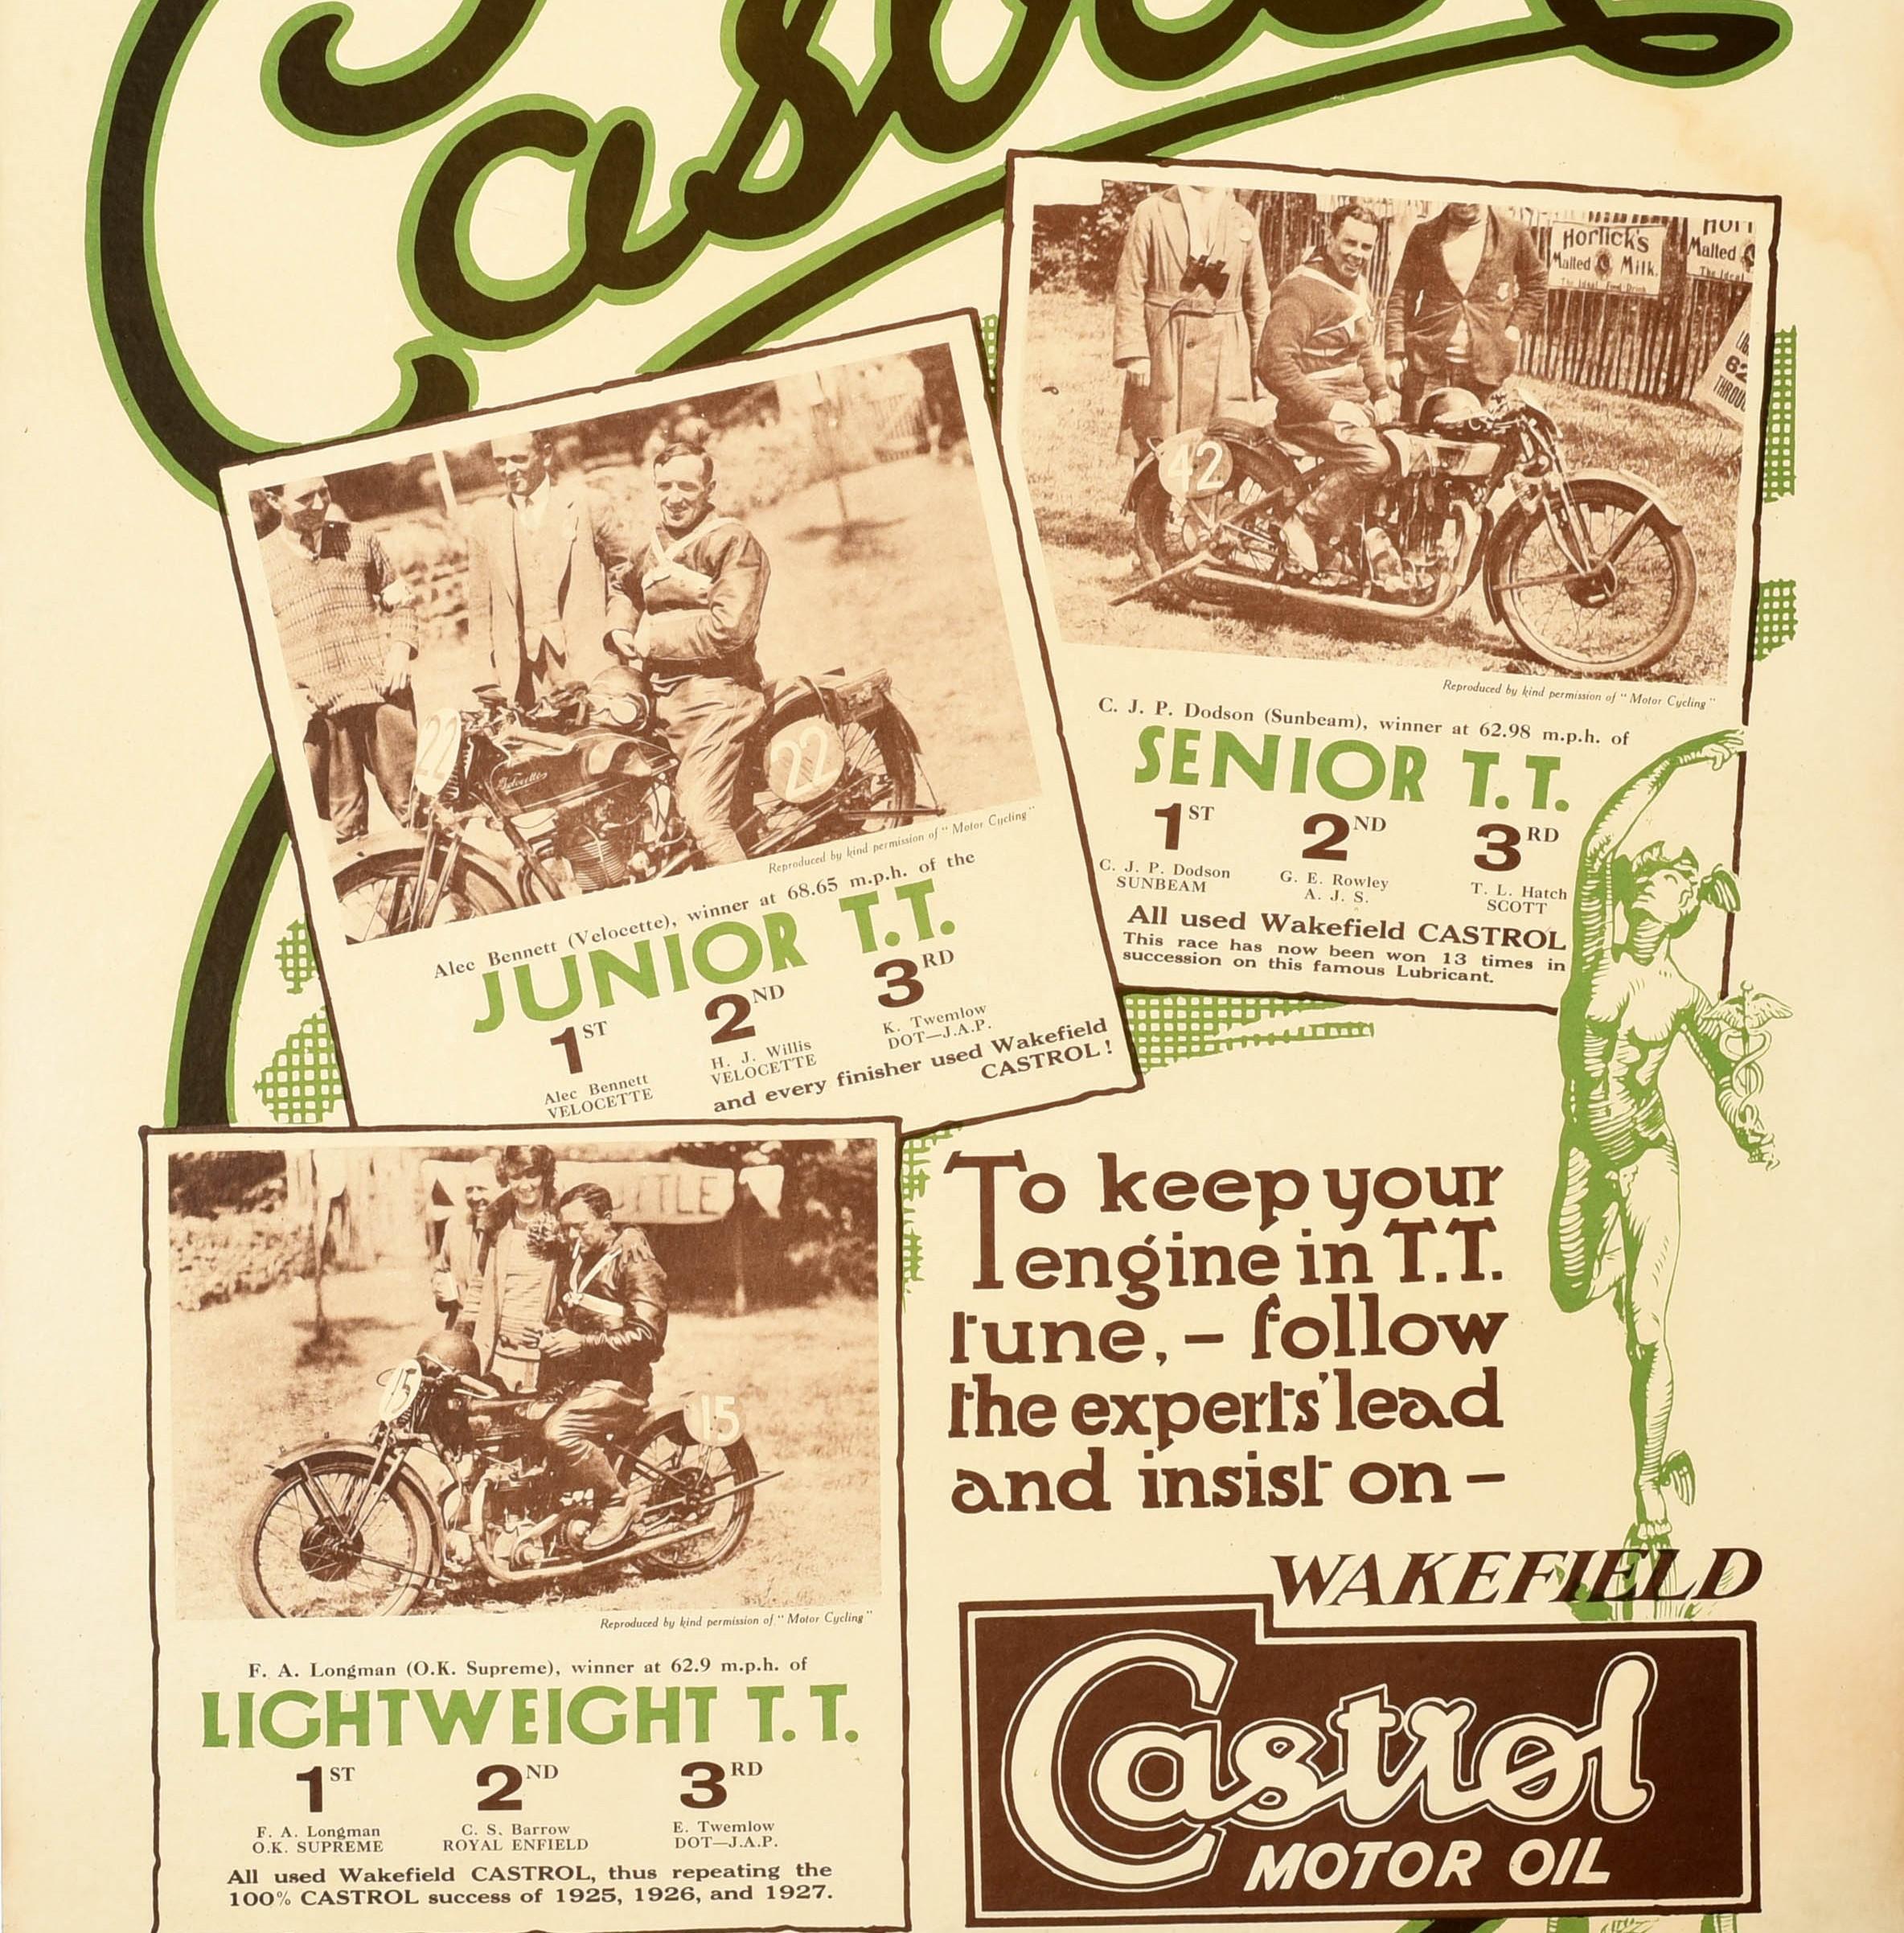 Original Vintage Motorsport Werbeplakat für Castrol Motor Oil - 1928 T.T. Rennen, die wieder mit Castrol gewonnen wurden - mit dem Titel in fetten stilisierten Buchstaben oben, dem Schwung des Buchstabens L hinter den Fotos und der Beschreibung der